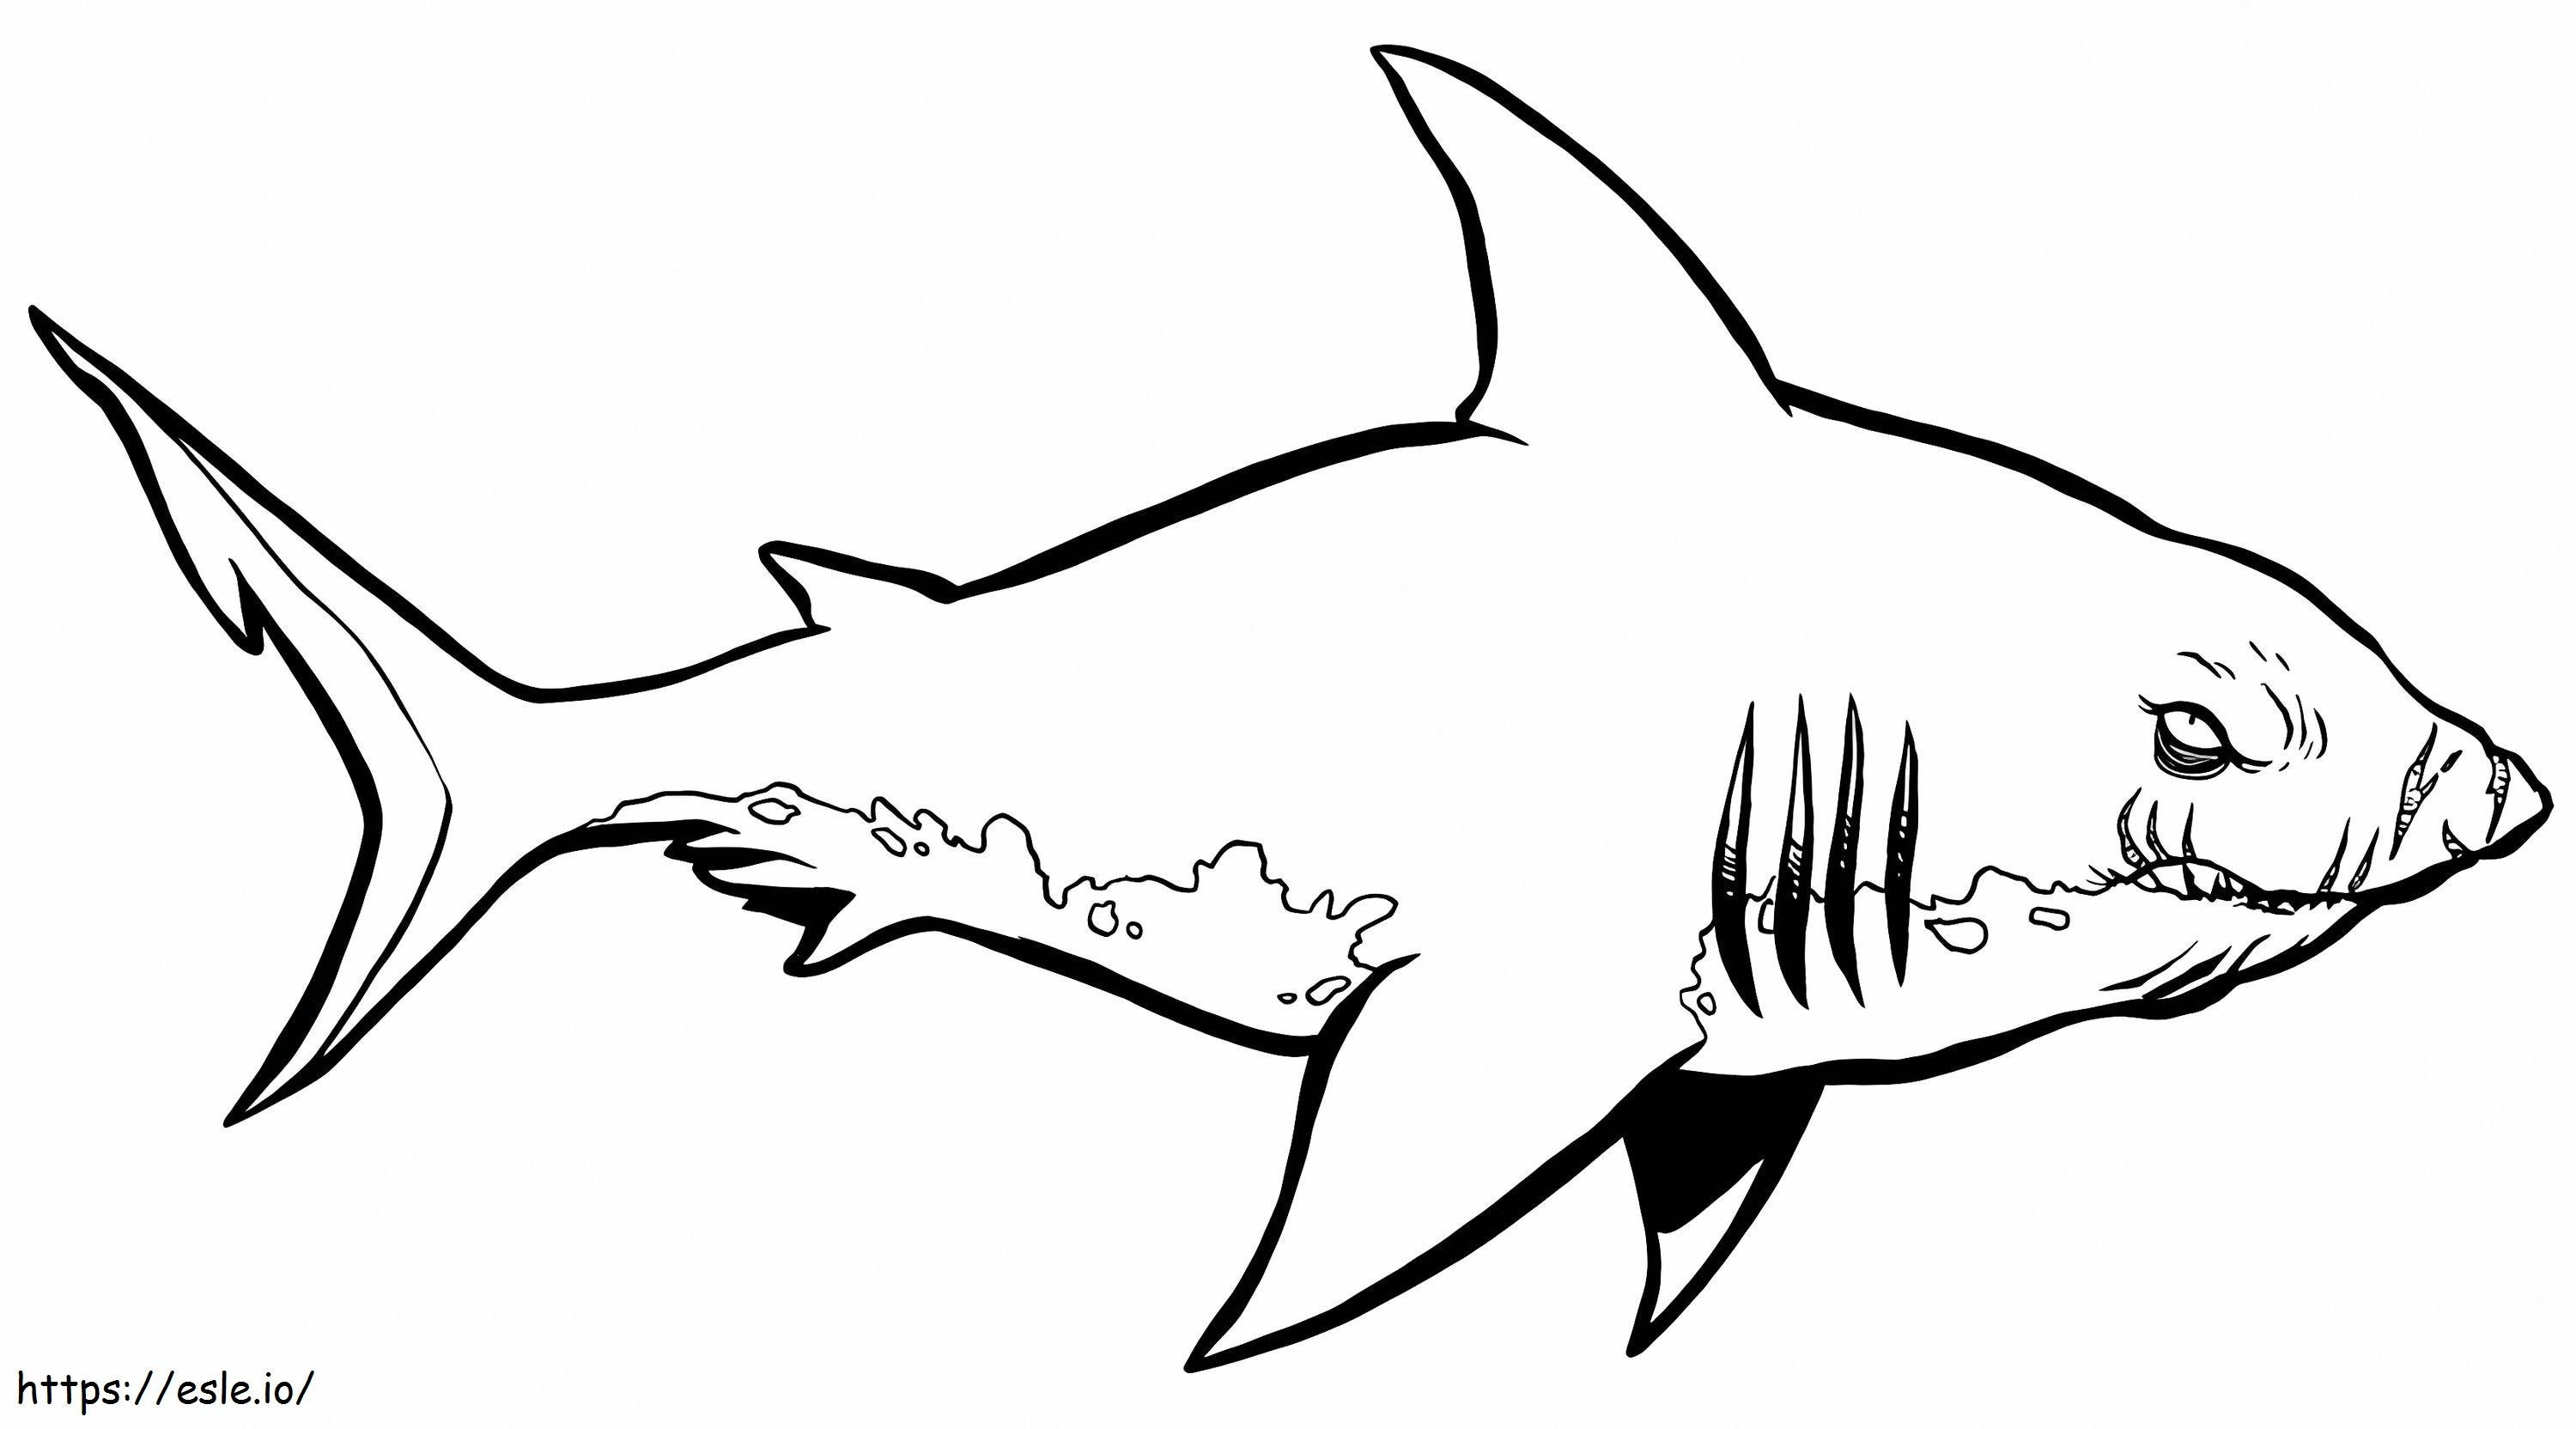 Coloriage 1541379158_Shark Images à colorier livre de coloriage requin requin marteau Clipart livre de coloriage crayon corbeaux à imprimer dessin